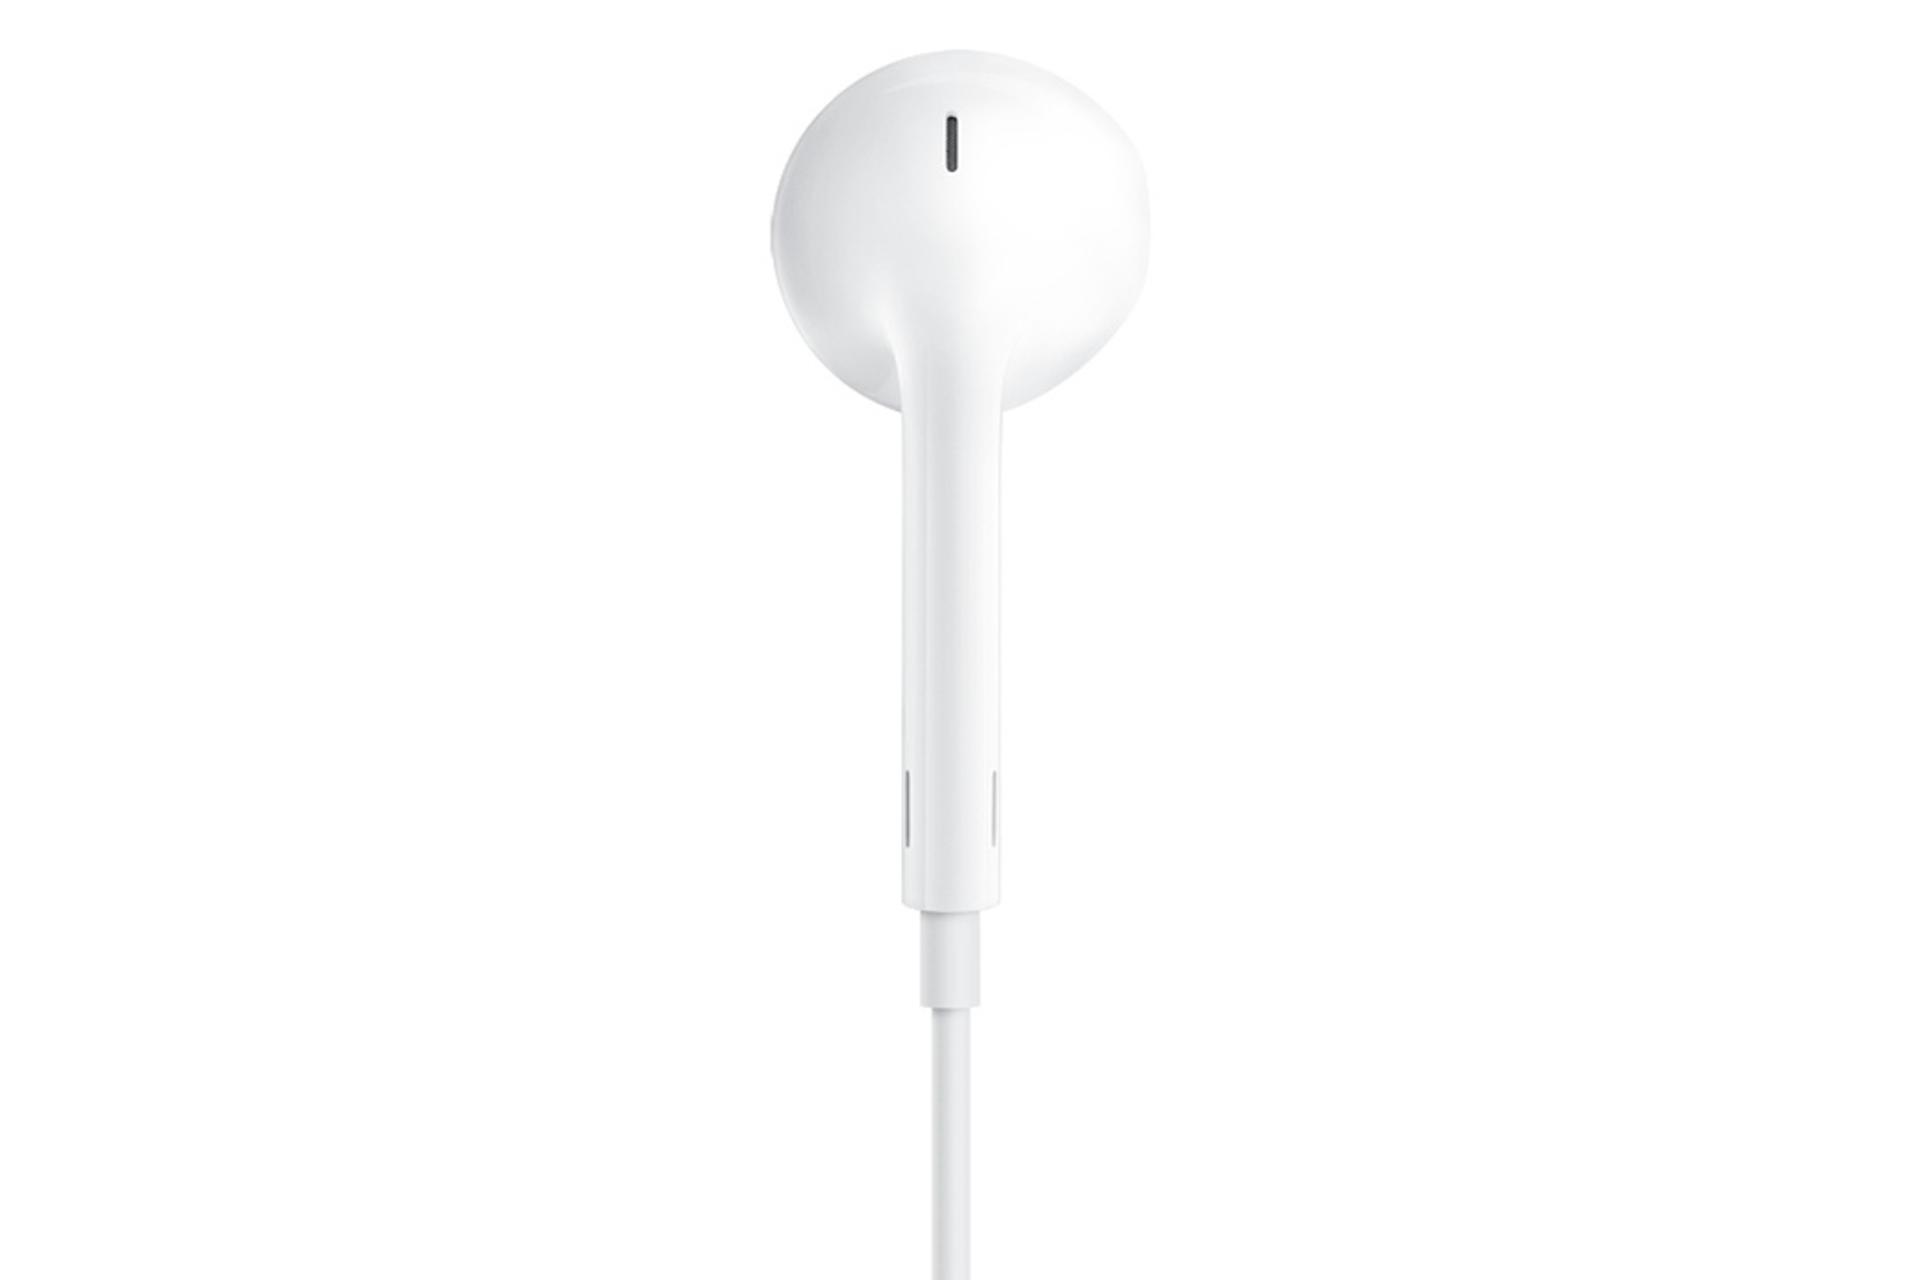 مرجع متخصصين ايران نماي پشتي هدفون بي سيم ايرپادز اپل با كانكتور لايتنينگ Apple EarPods with Lightning Connector سفيد